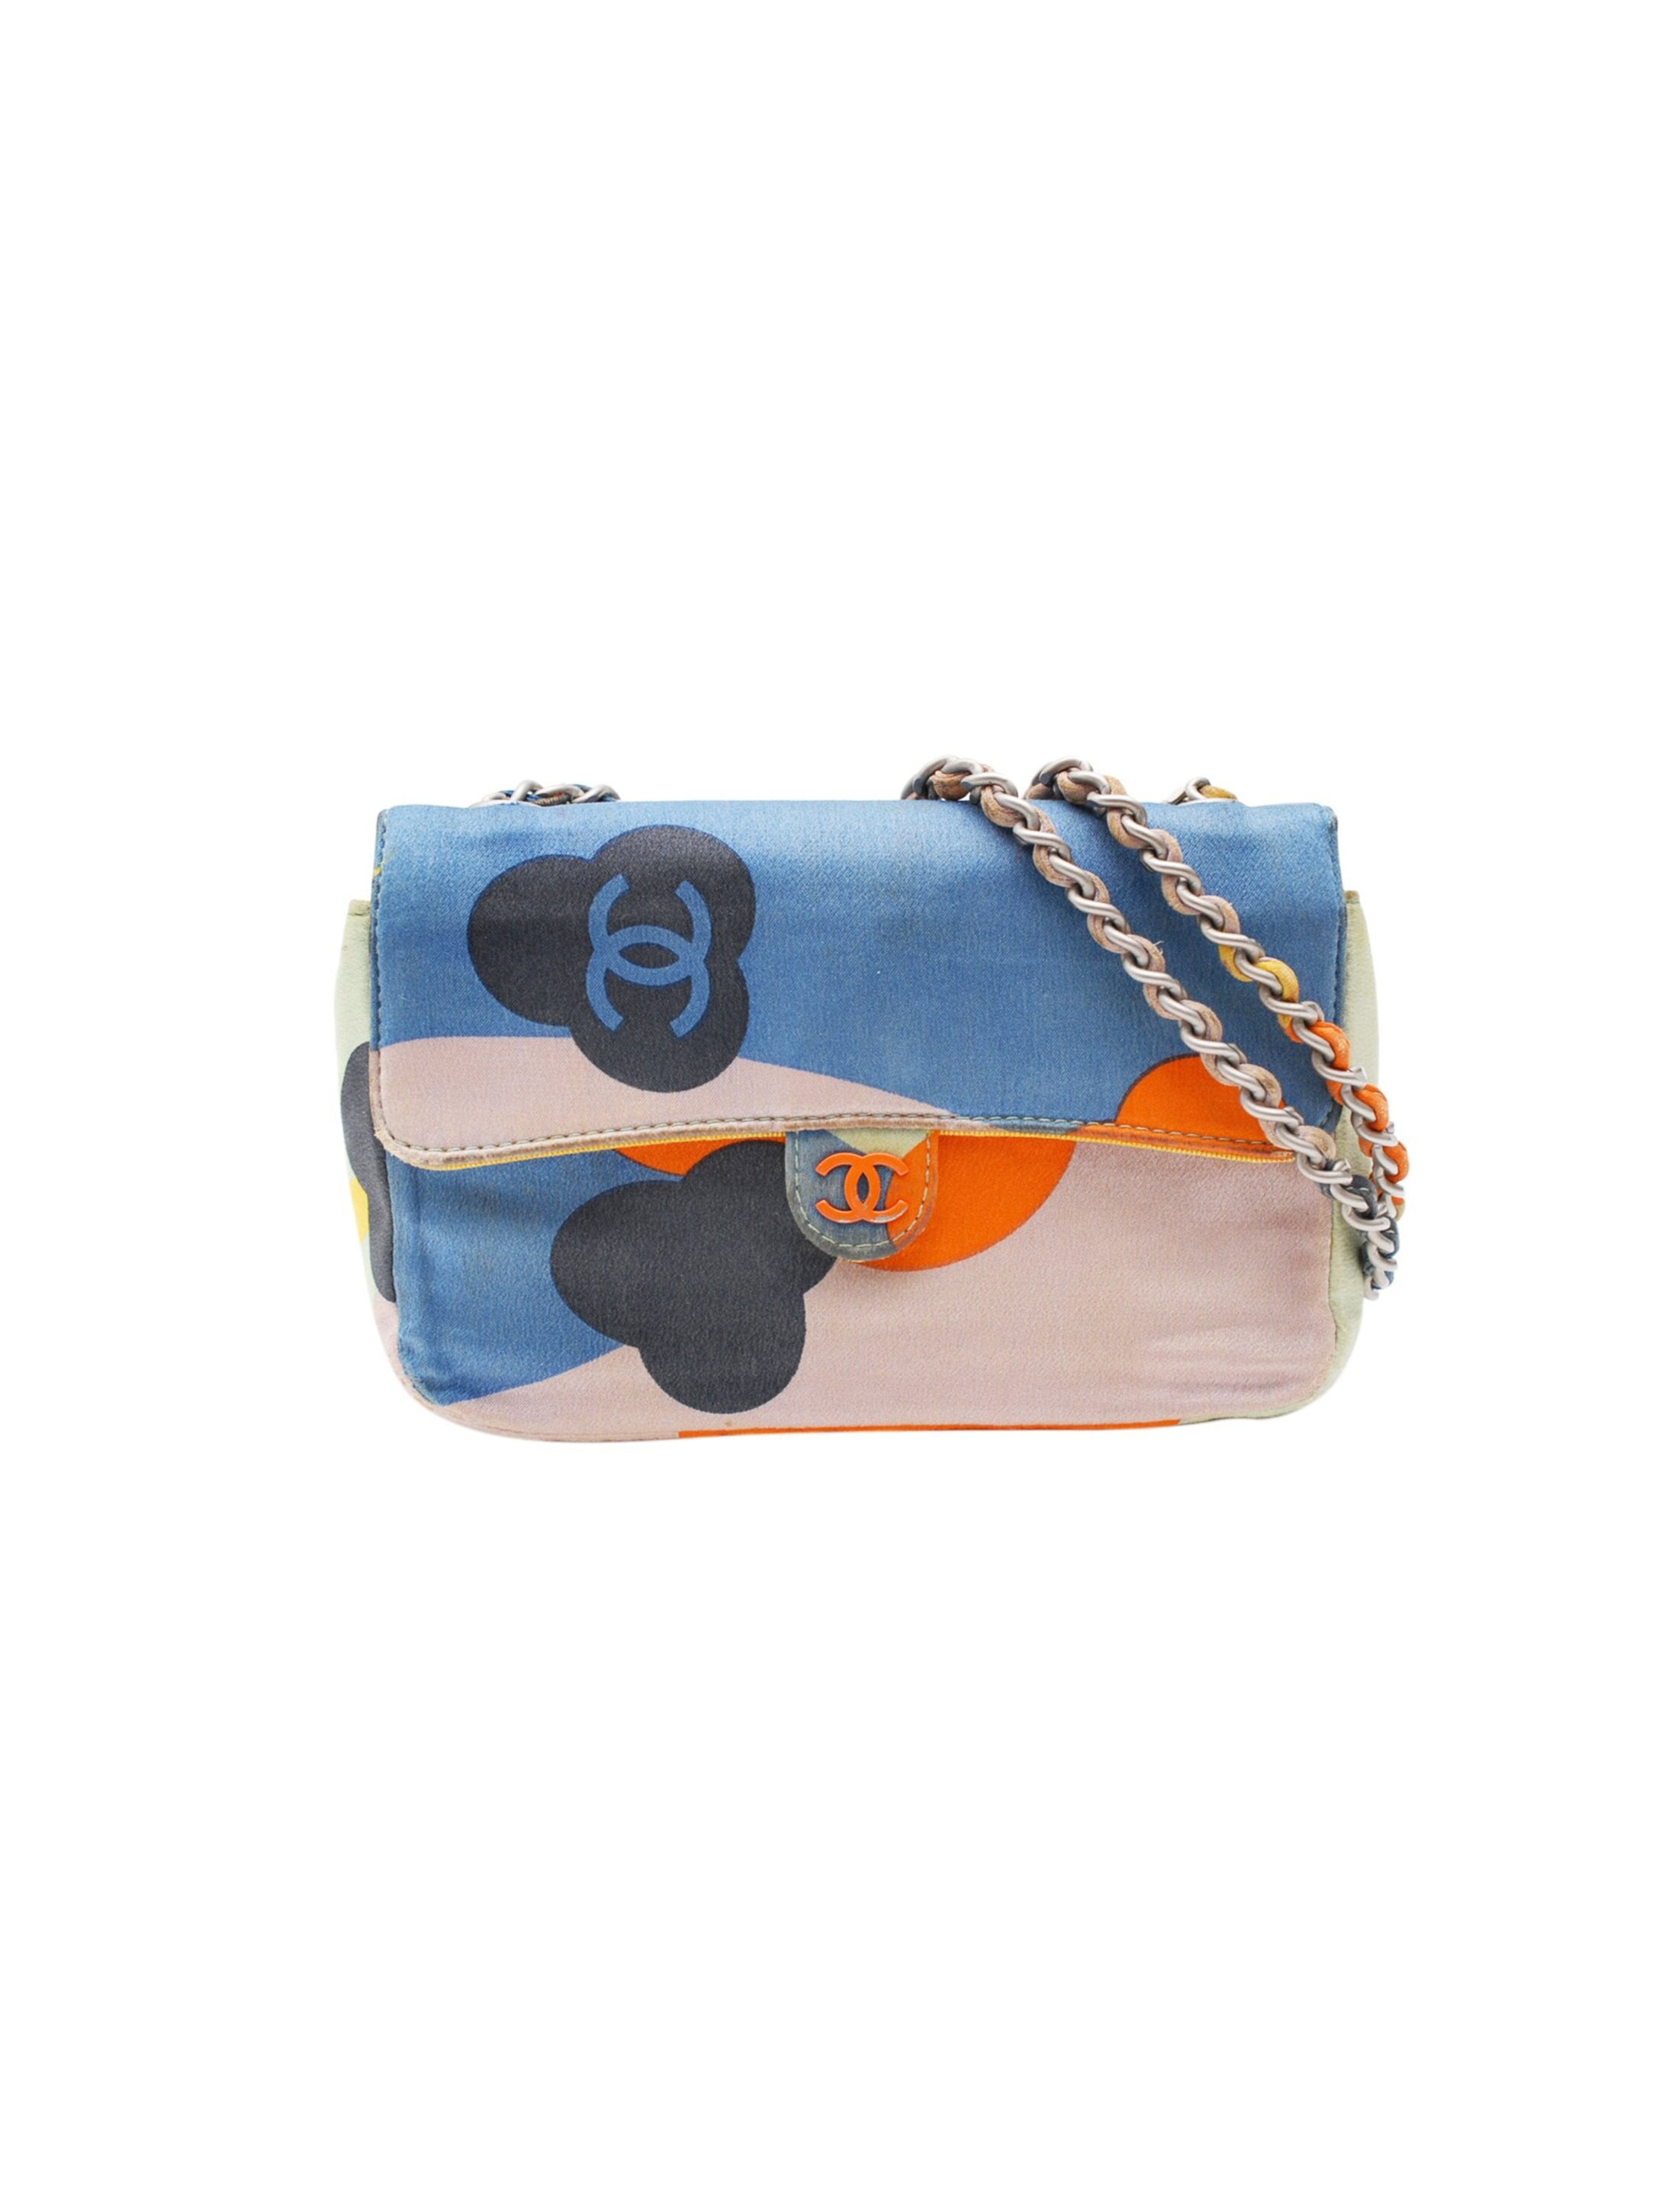 Chanel 2000s Rare Multi-Color Patch Mini Handbag